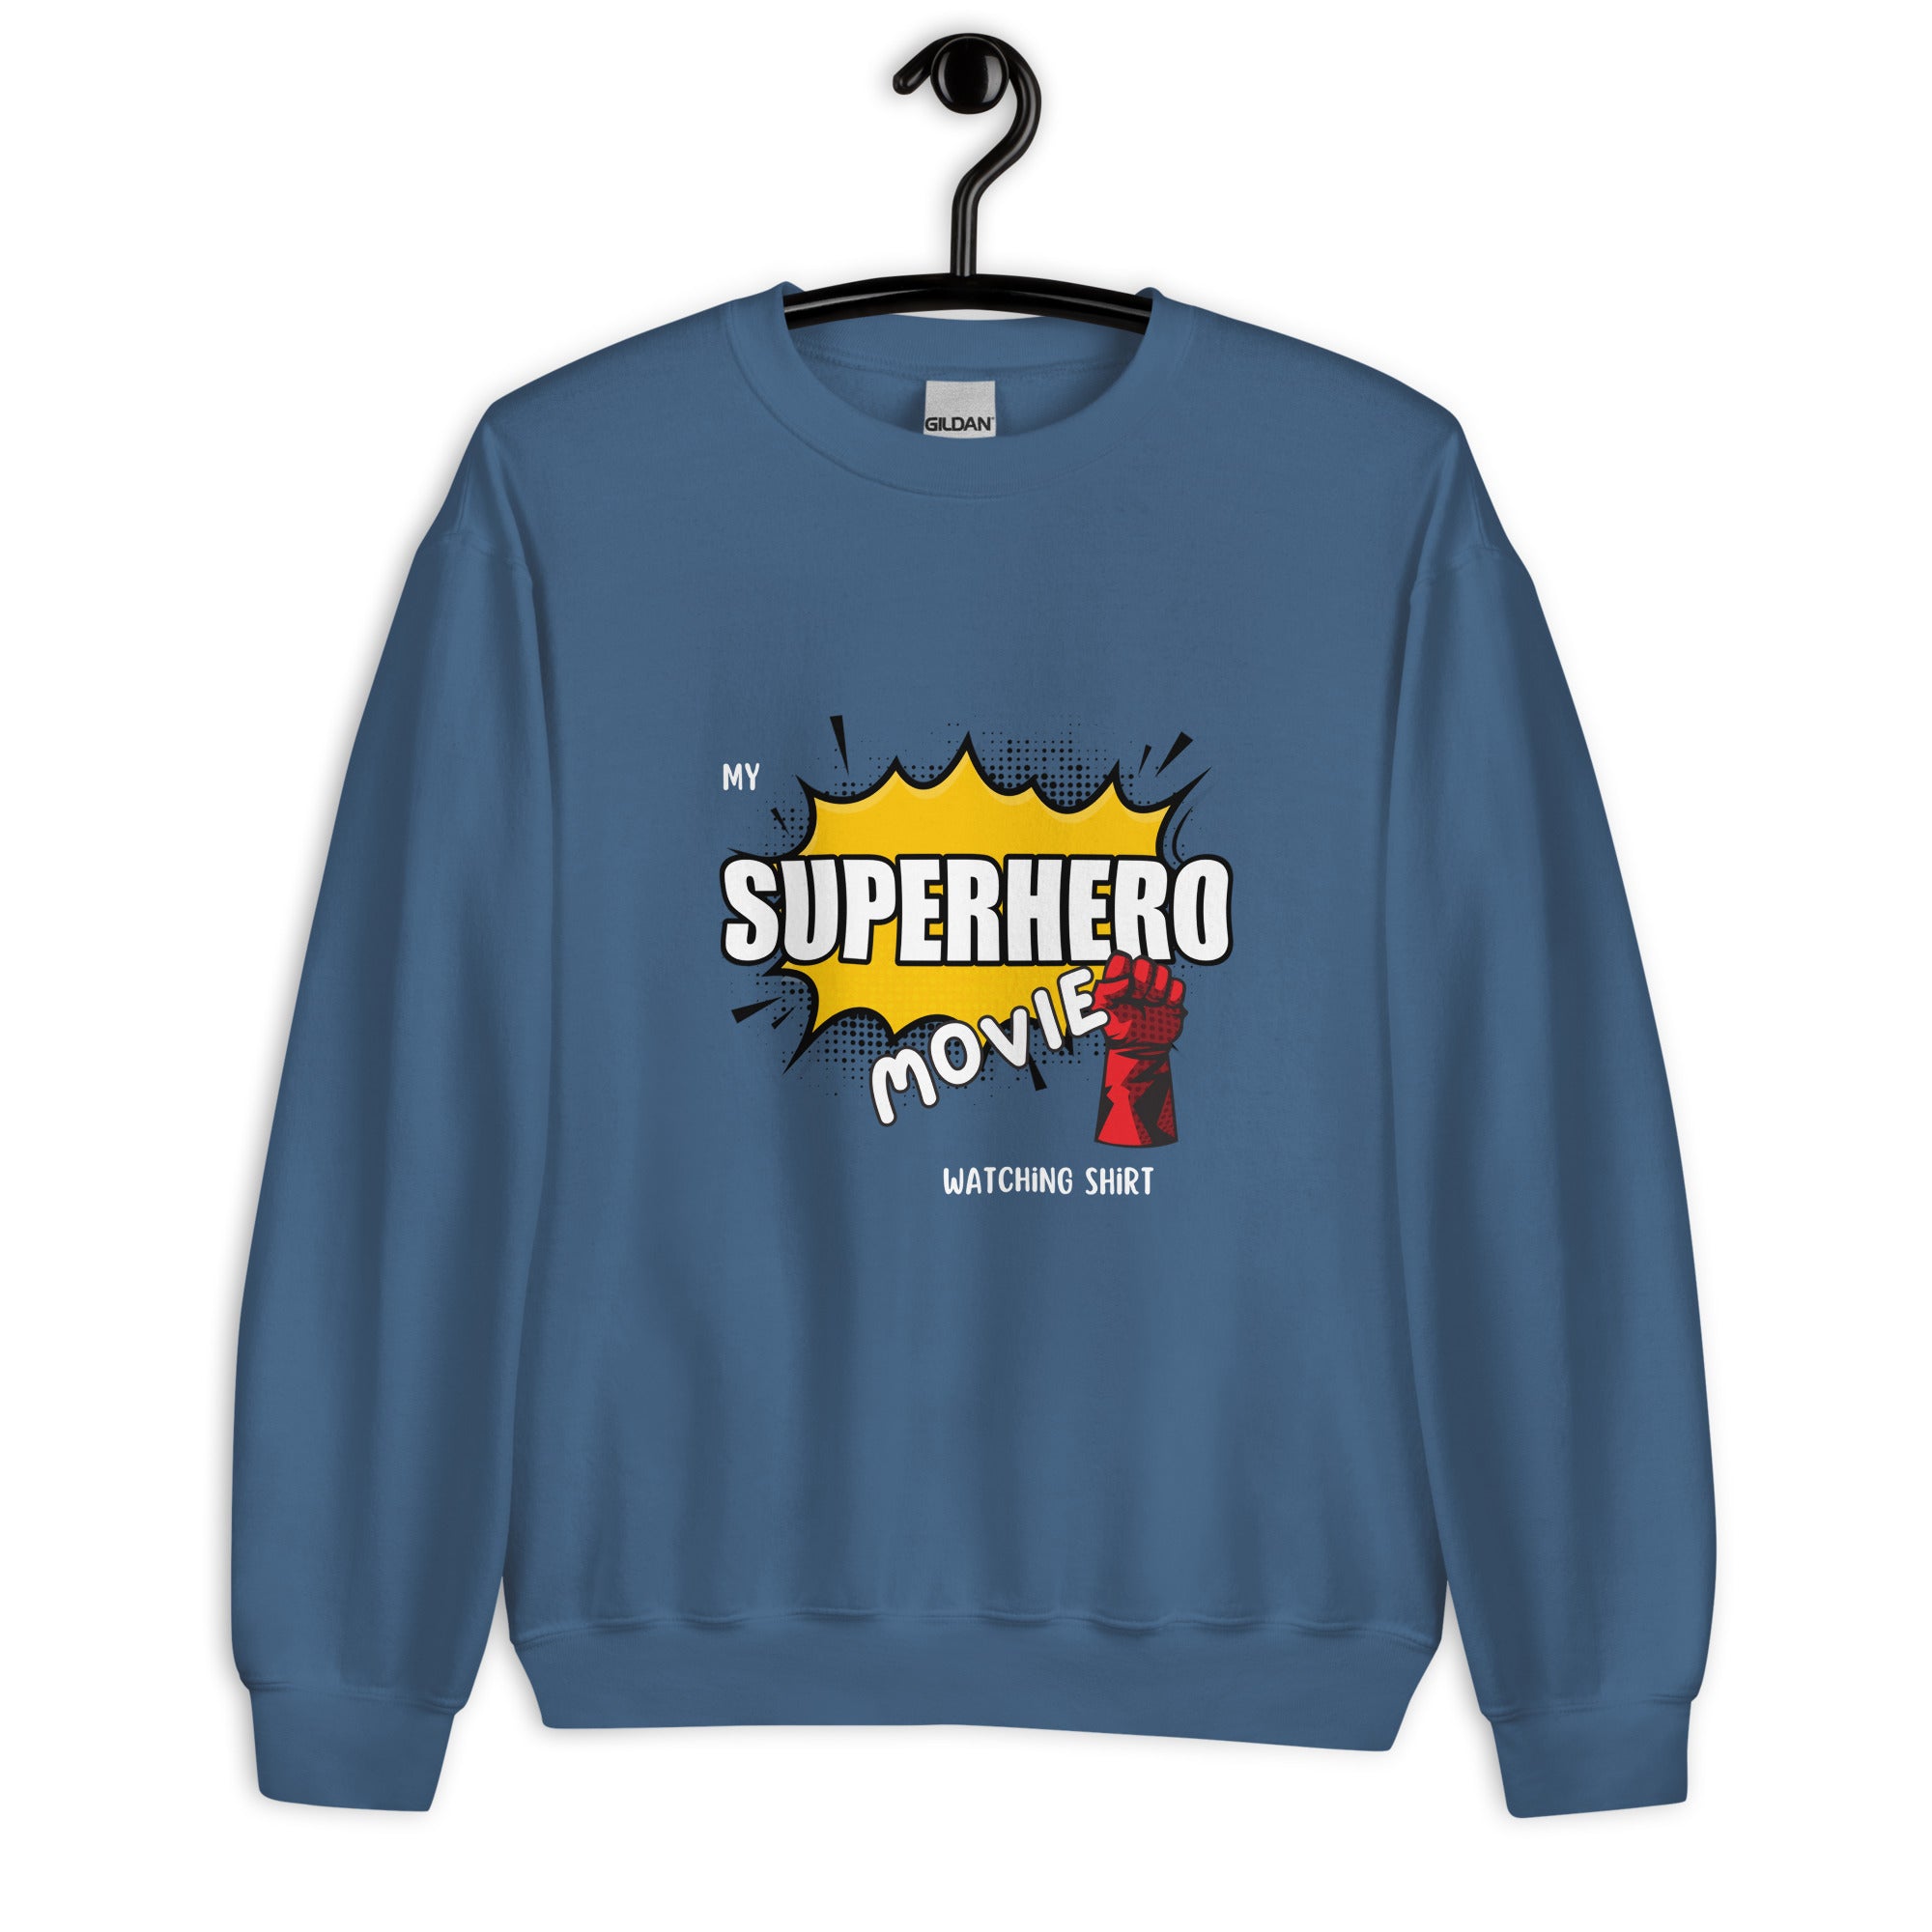 Superhero WatchingUnisex Sweatshirt